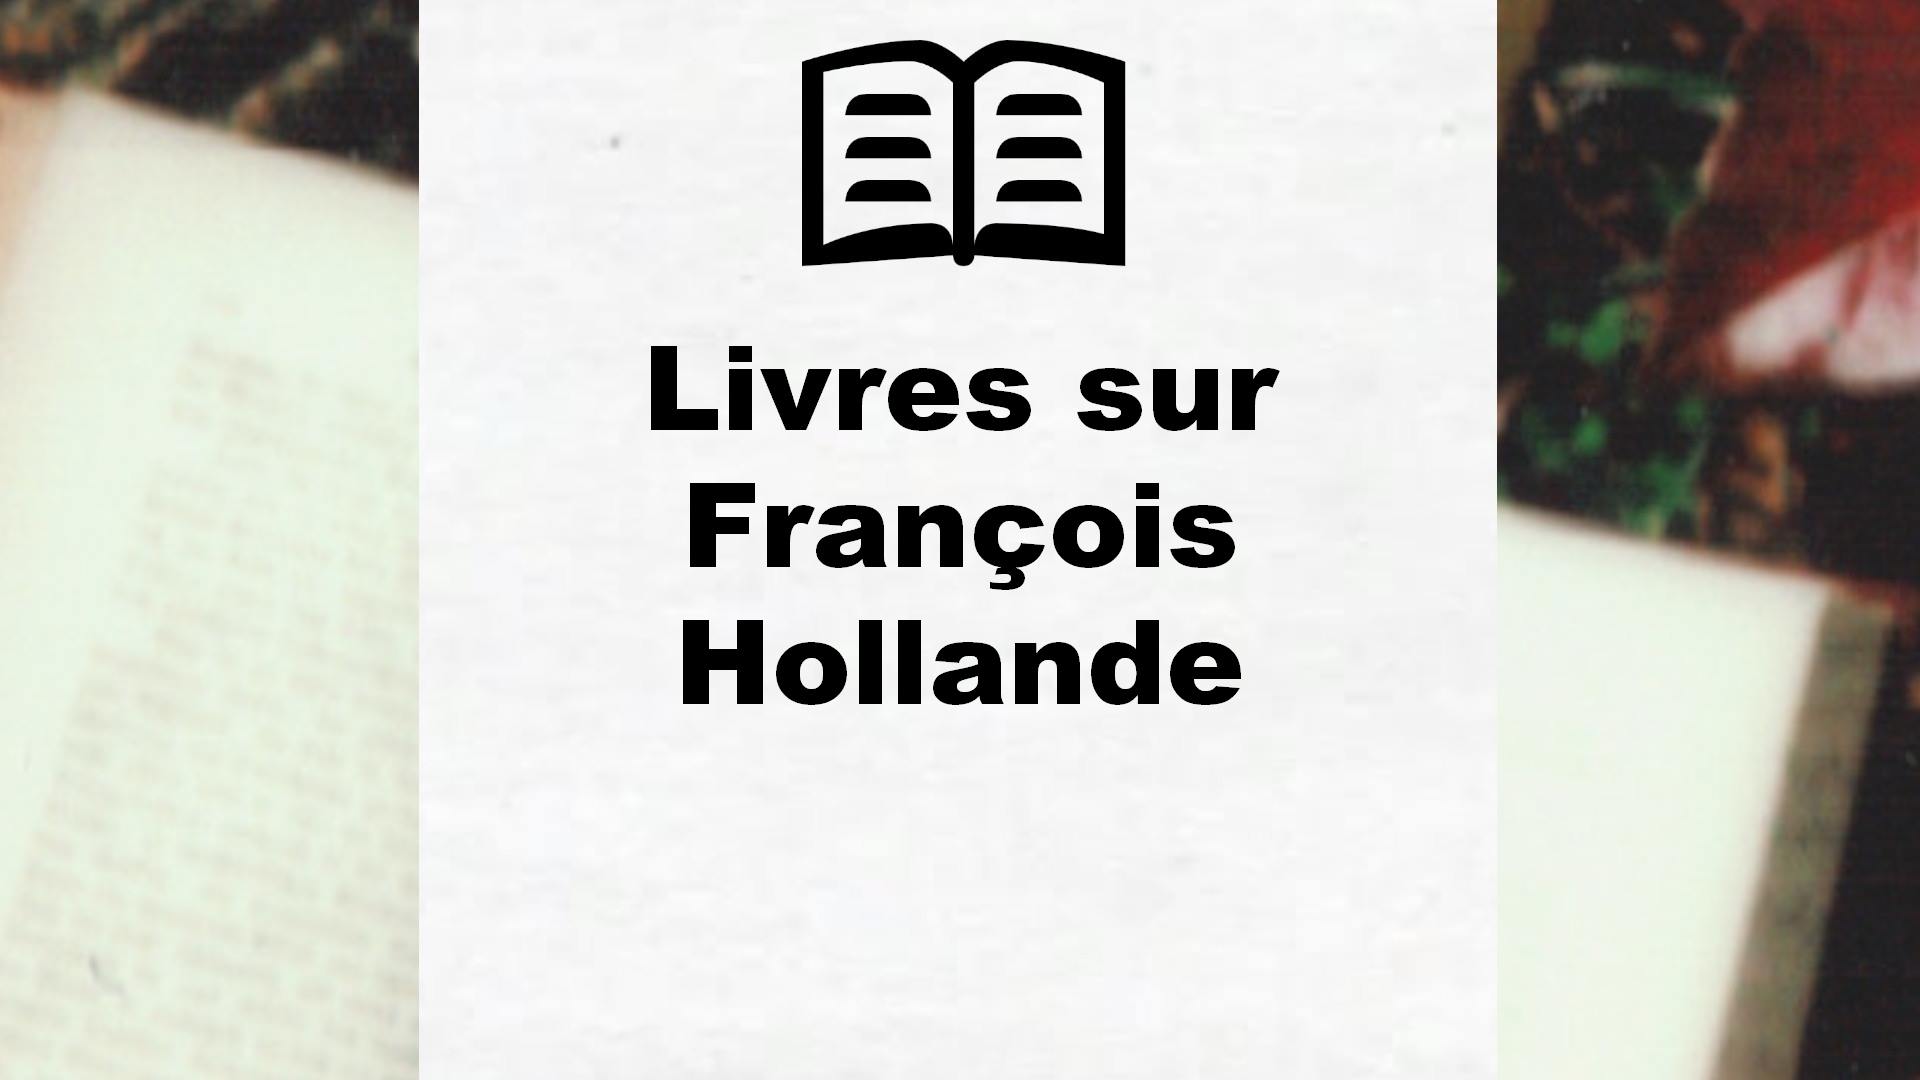 Livres sur François Hollande